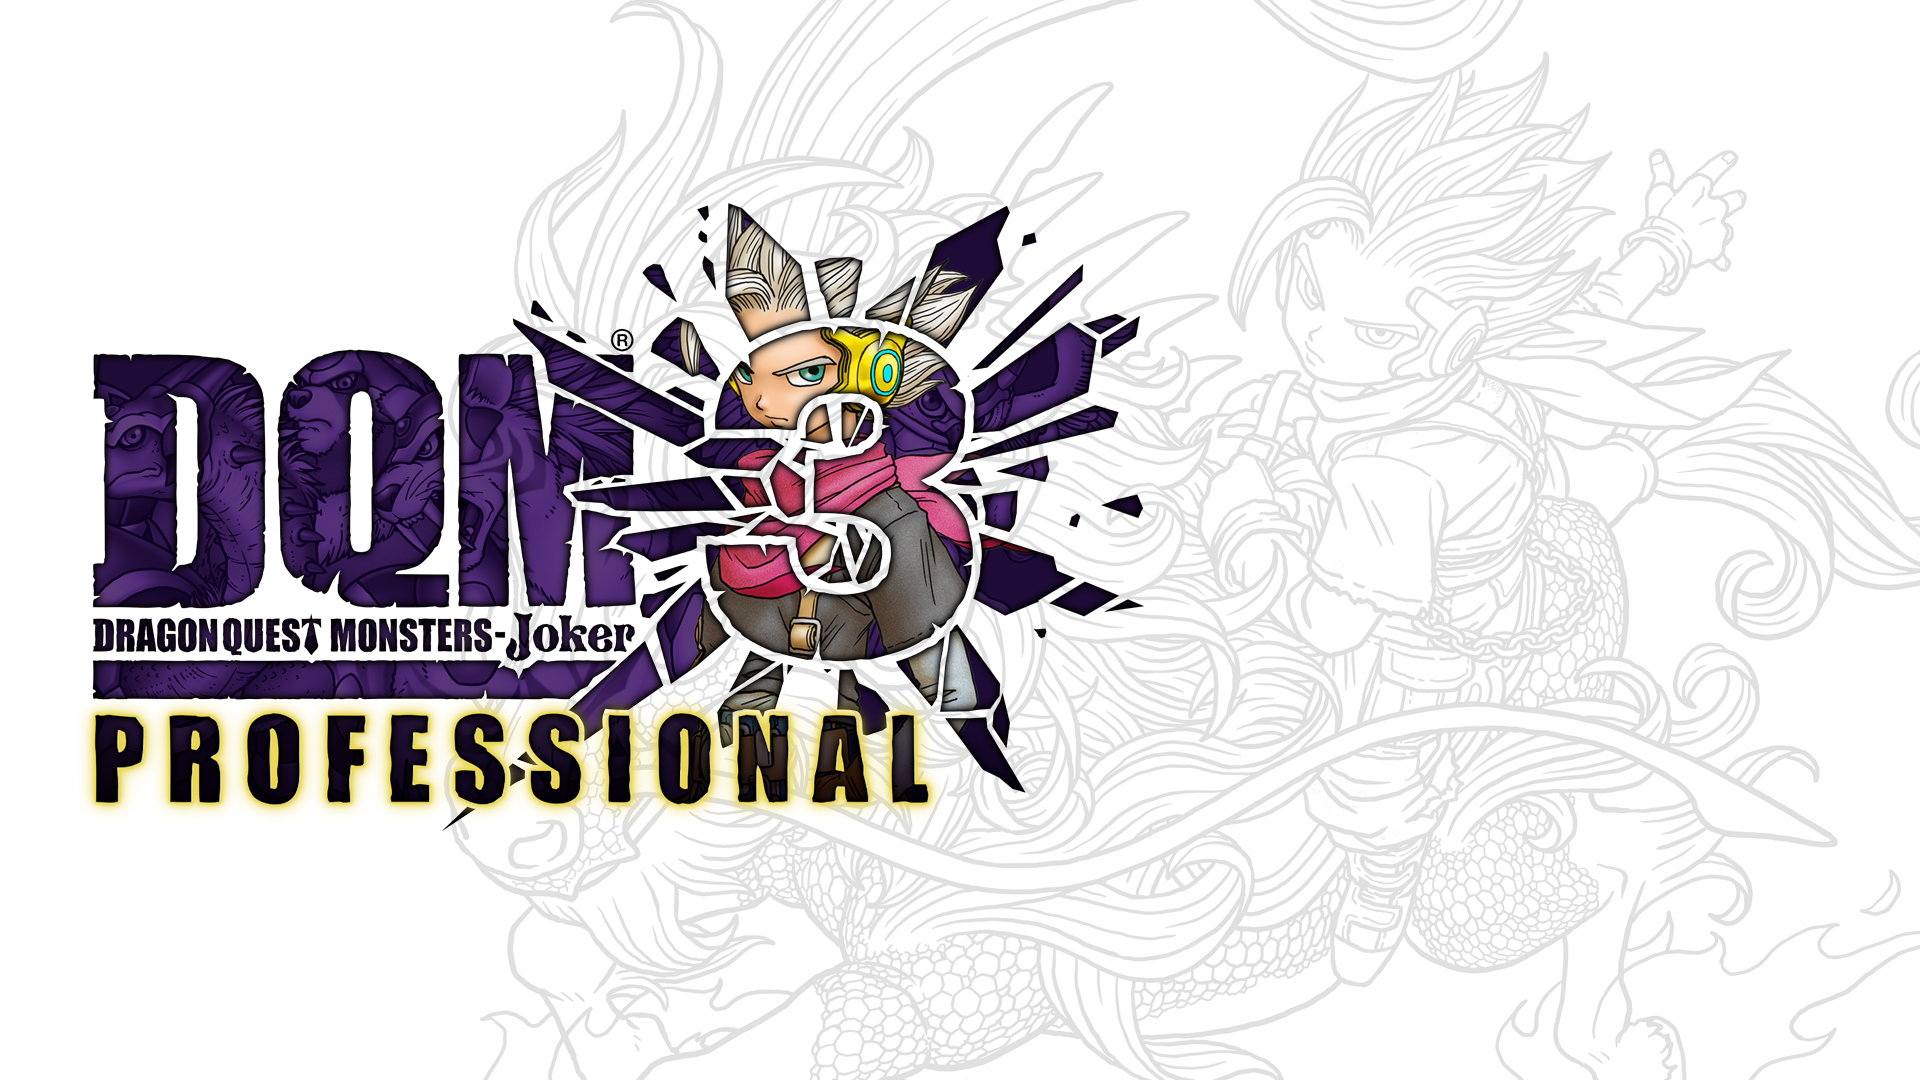 ドラゴンクエストモンスターズ ジョーカー3 プロフェッショナル ニンテンドー3ds 任天堂